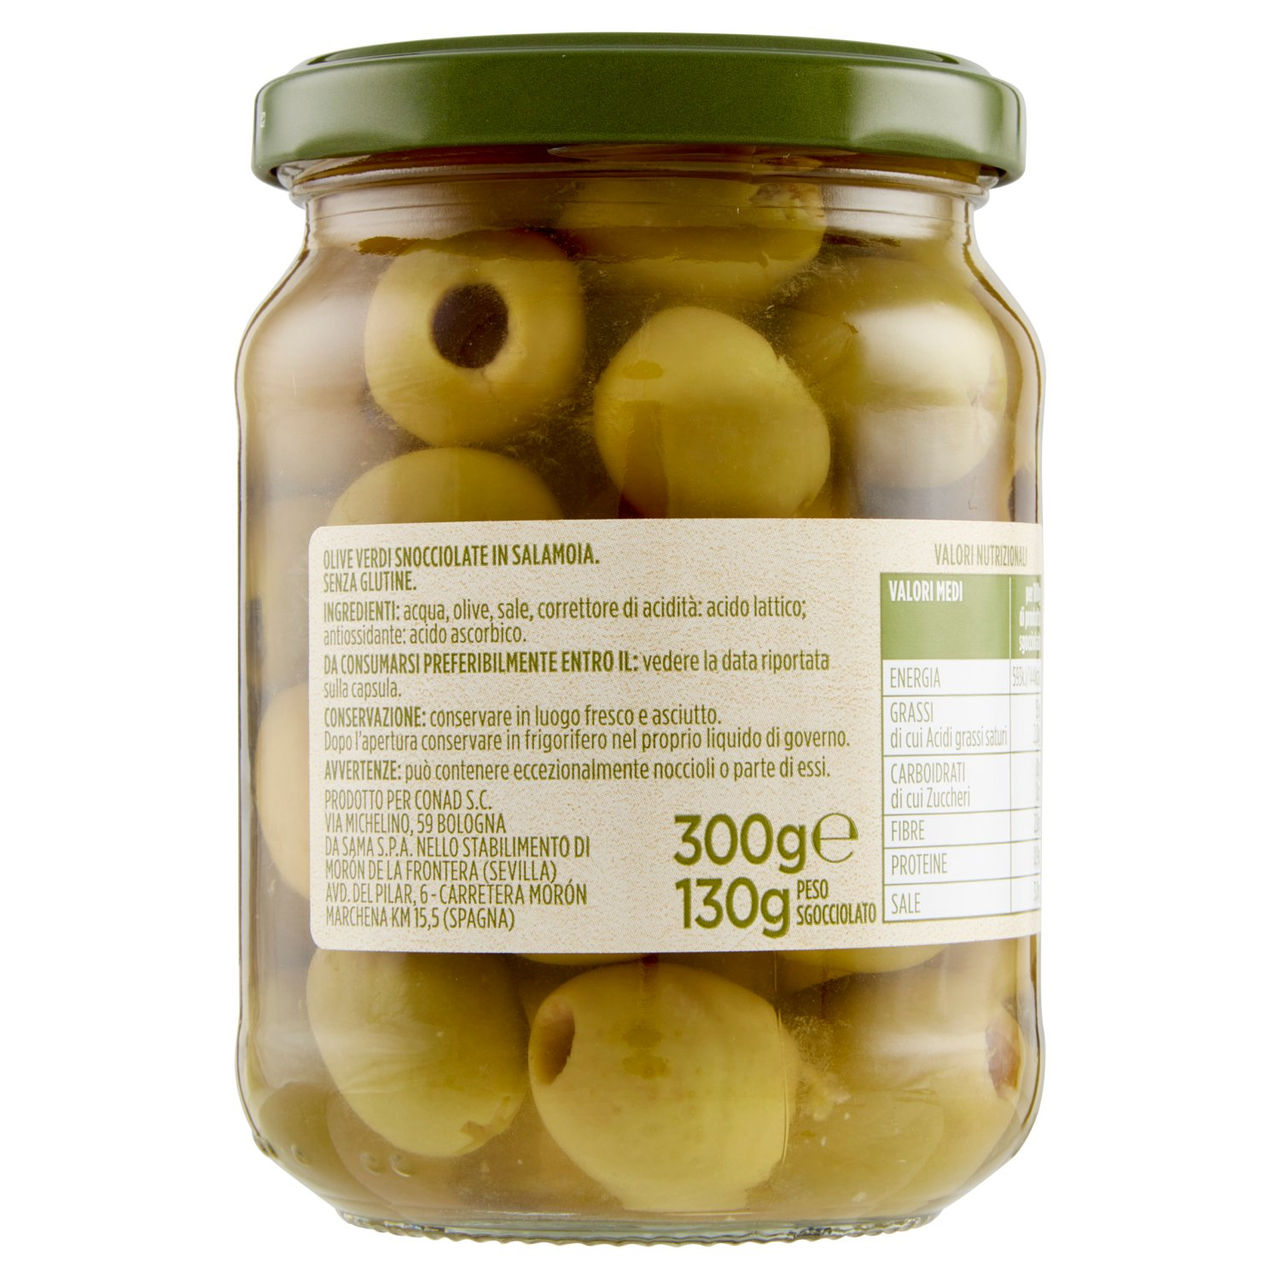 Olive Verdi Snocciolate in Salamoia 300 g Conad